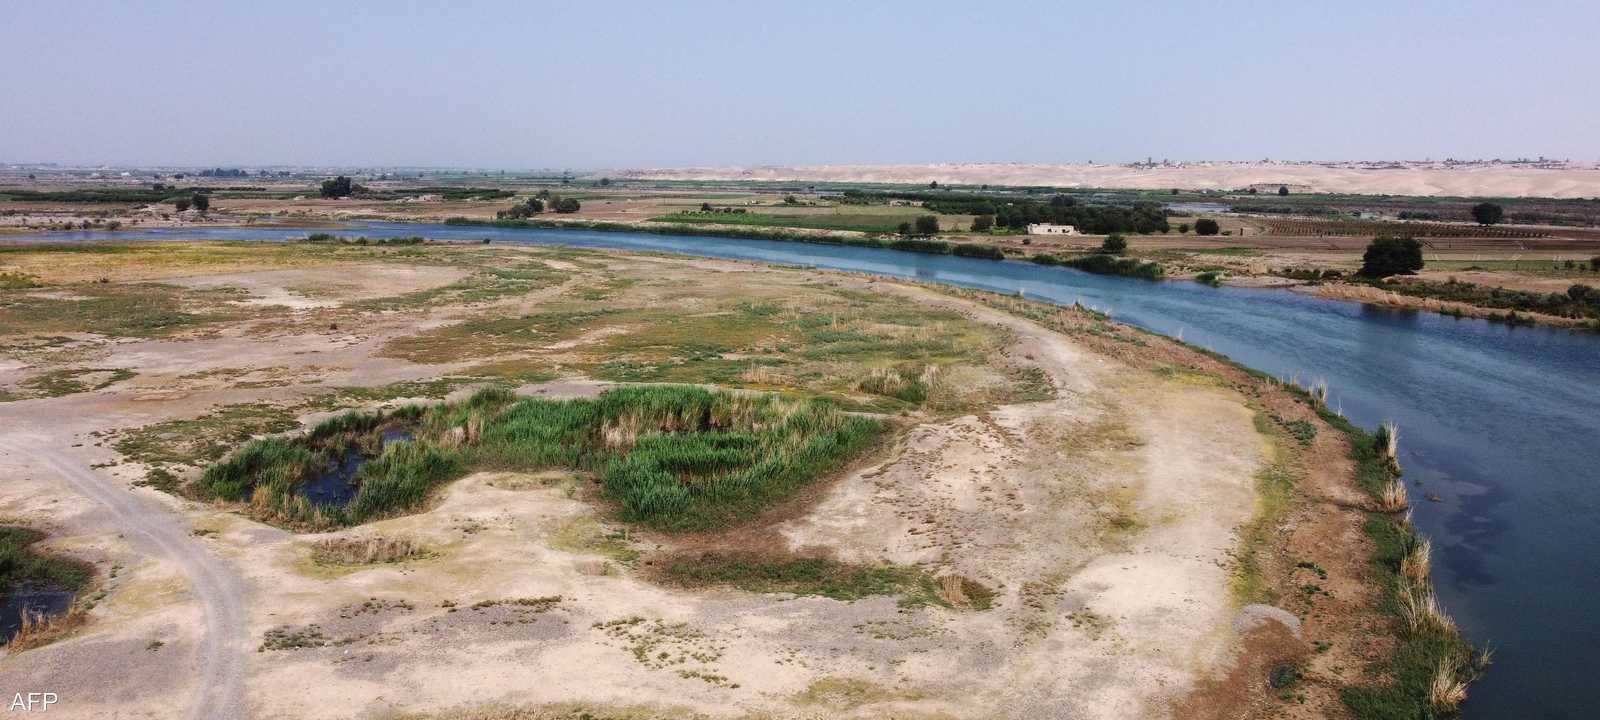 نهر الفرات يتراجع بفعل التغير المناخي.